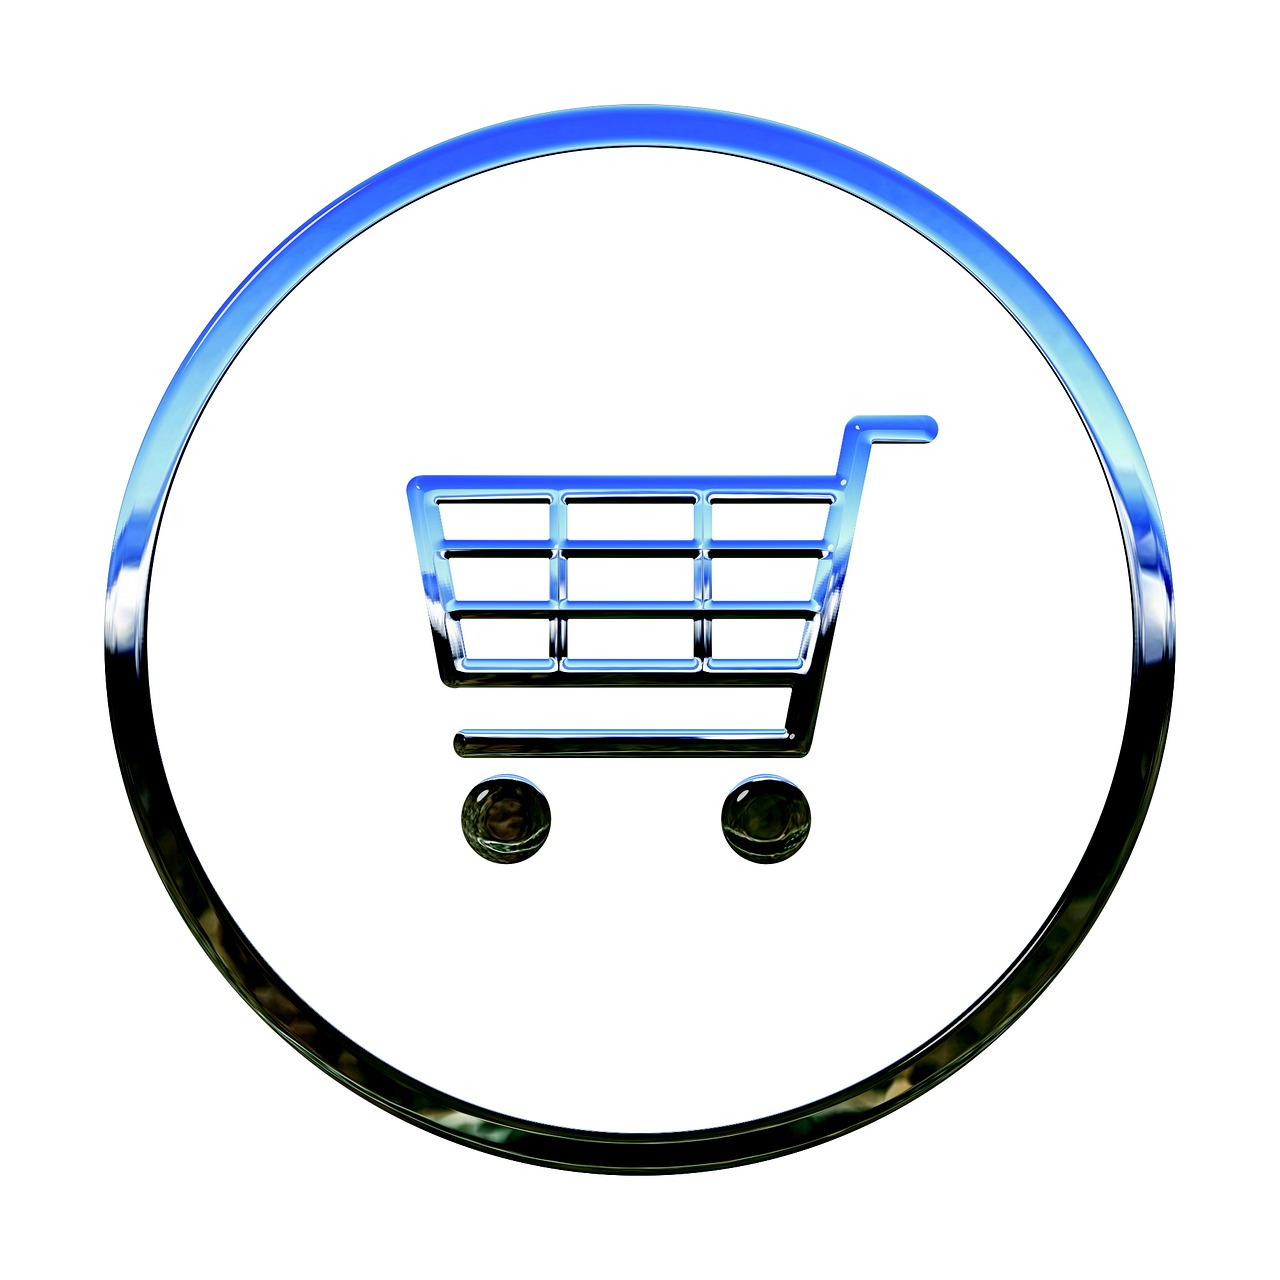 Verbeter Uw Online Verkoop: Top 3 E-commerce Contracten